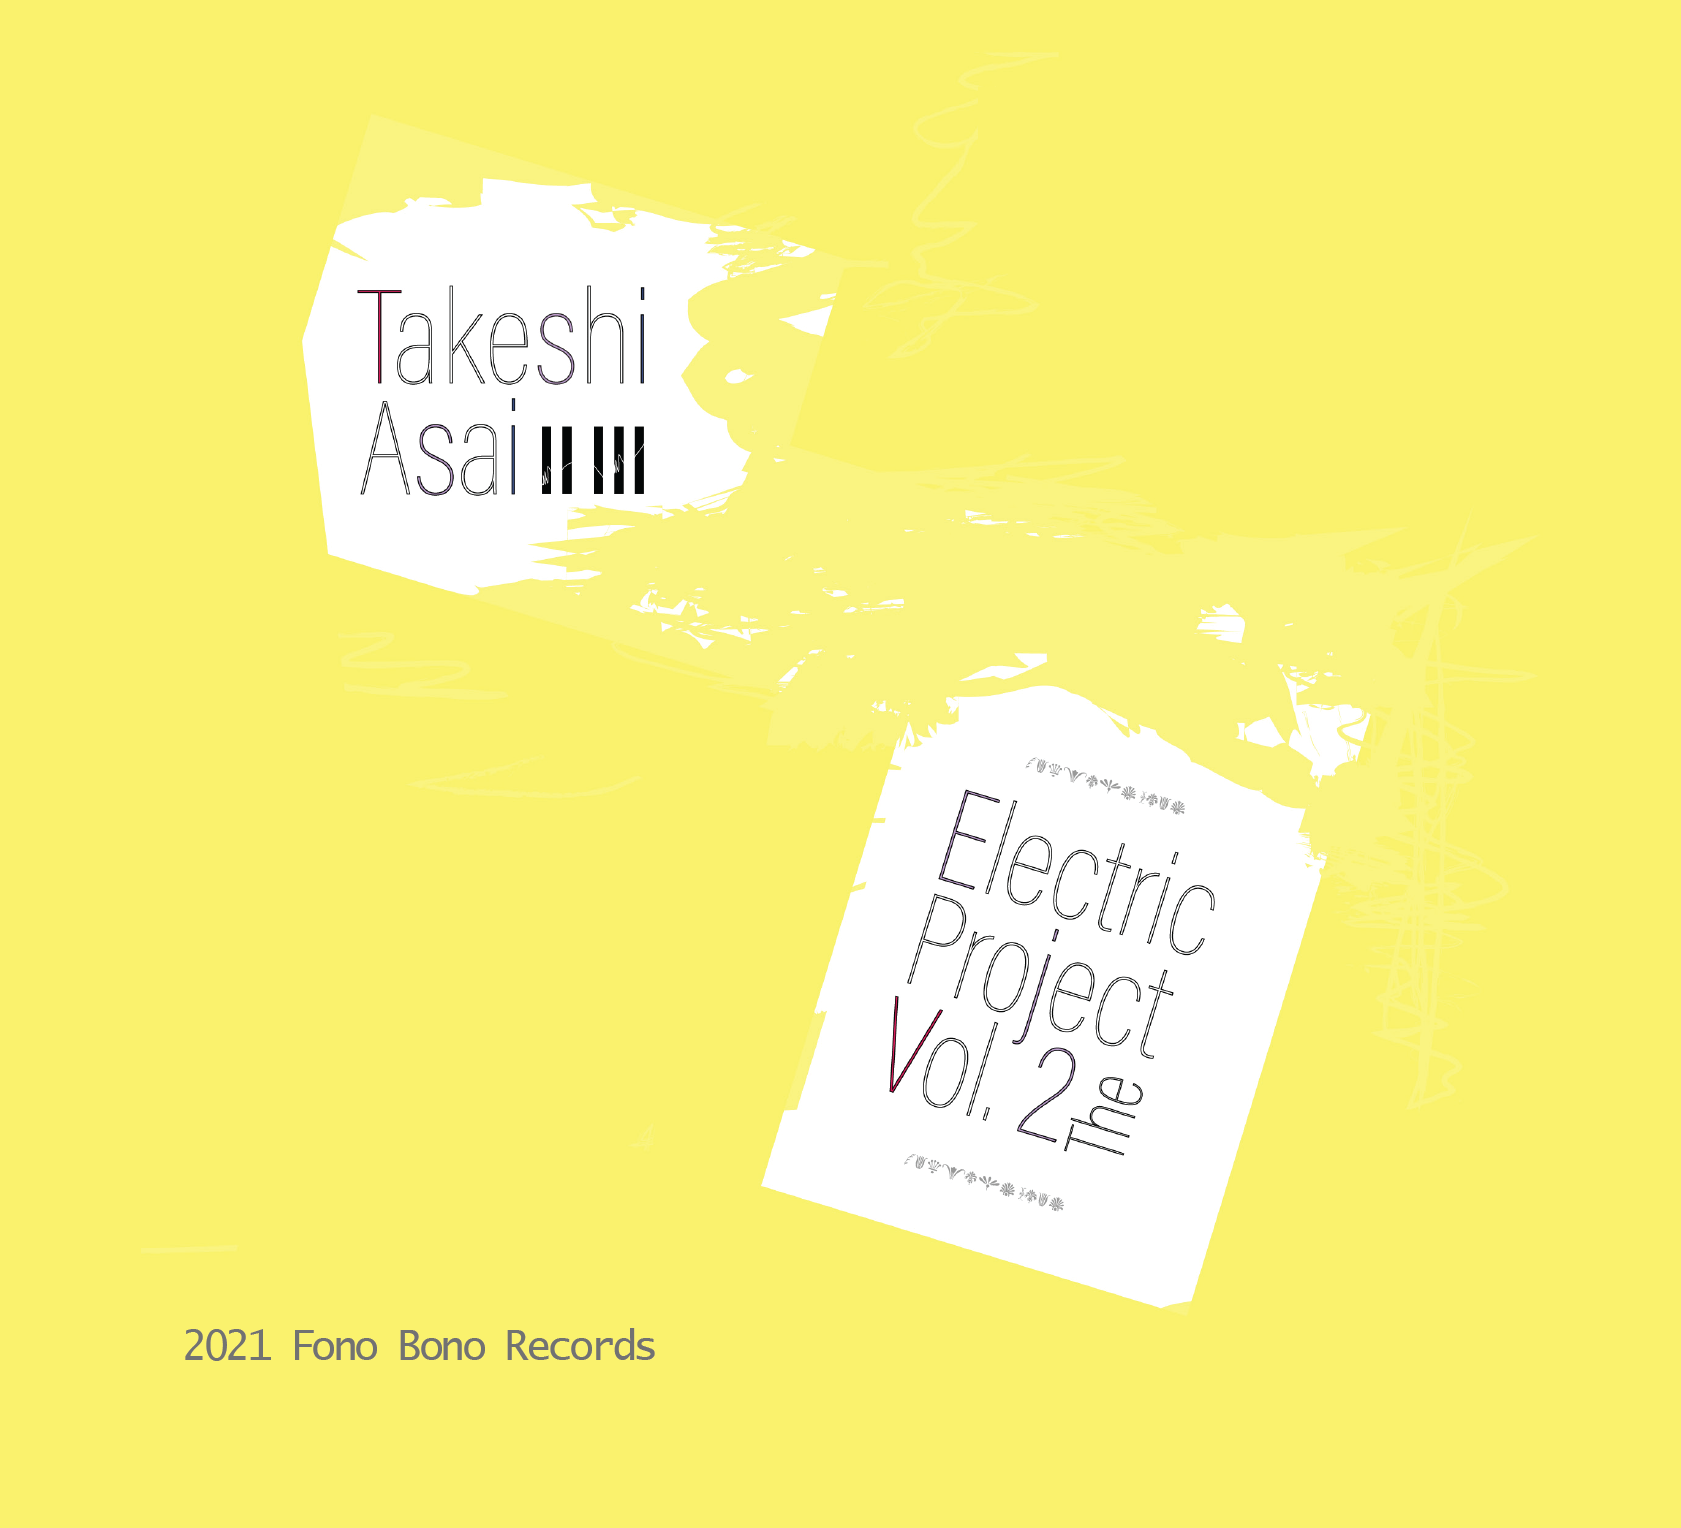 Takeshi Asai Trio VOl. VI